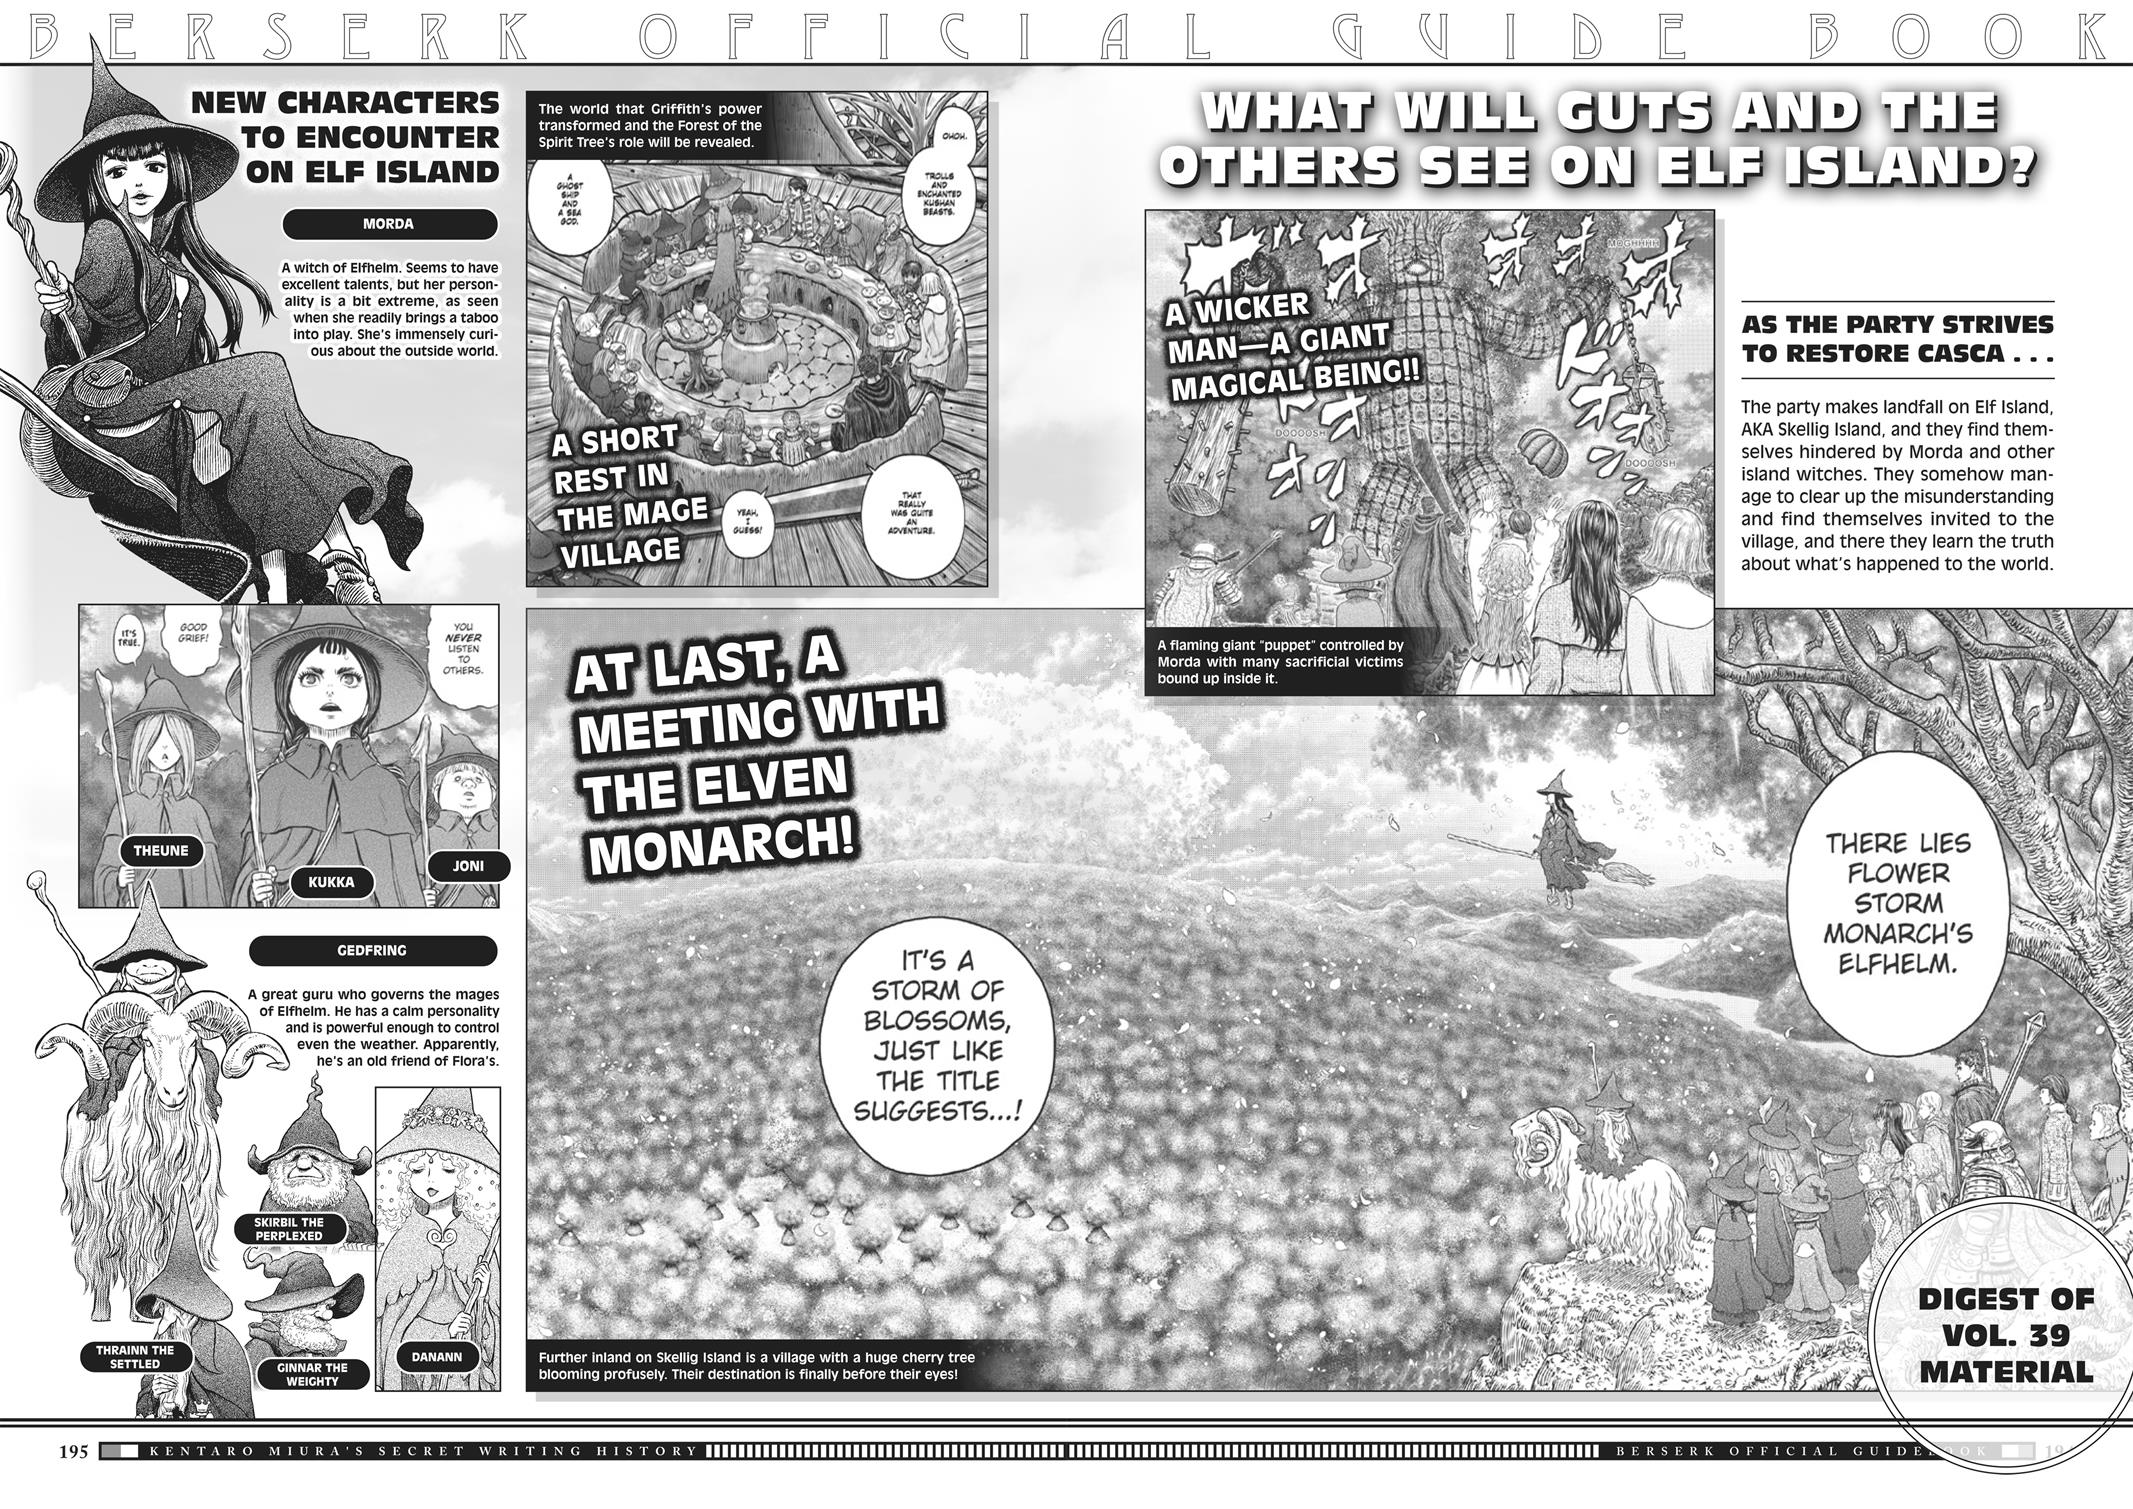 Berserk Manga Chapter 350.5 image 190